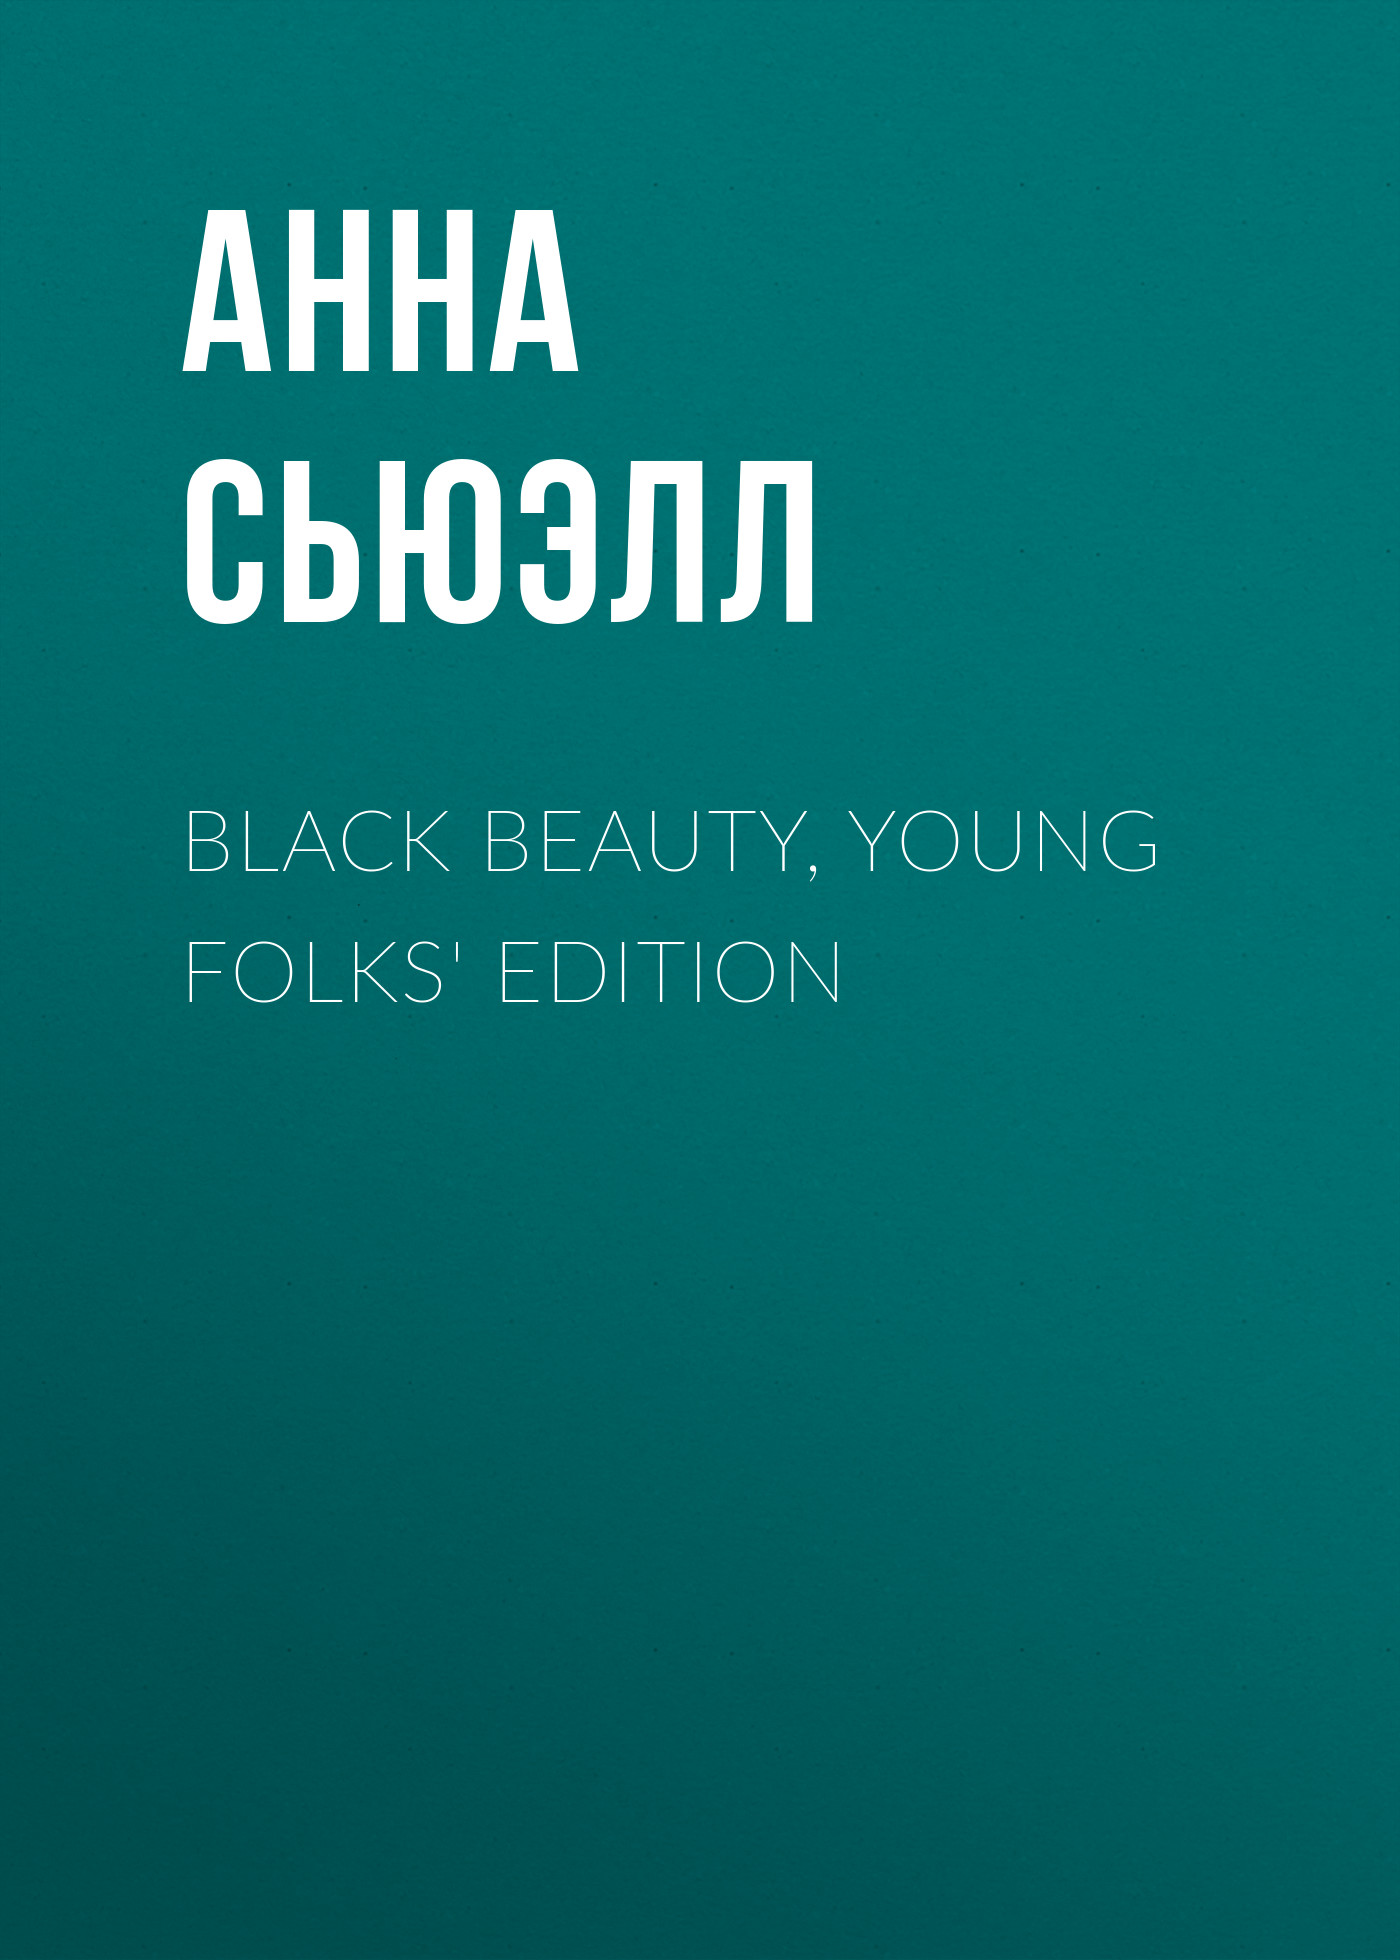 Книга Black Beauty, Young Folks' Edition из серии , созданная Анна Сьюэлл, может относится к жанру Историческая фантастика, Литература 19 века, Зарубежная старинная литература, Зарубежная классика, Зарубежные детские книги, Исторические приключения. Стоимость электронной книги Black Beauty, Young Folks' Edition с идентификатором 34843078 составляет 0 руб.